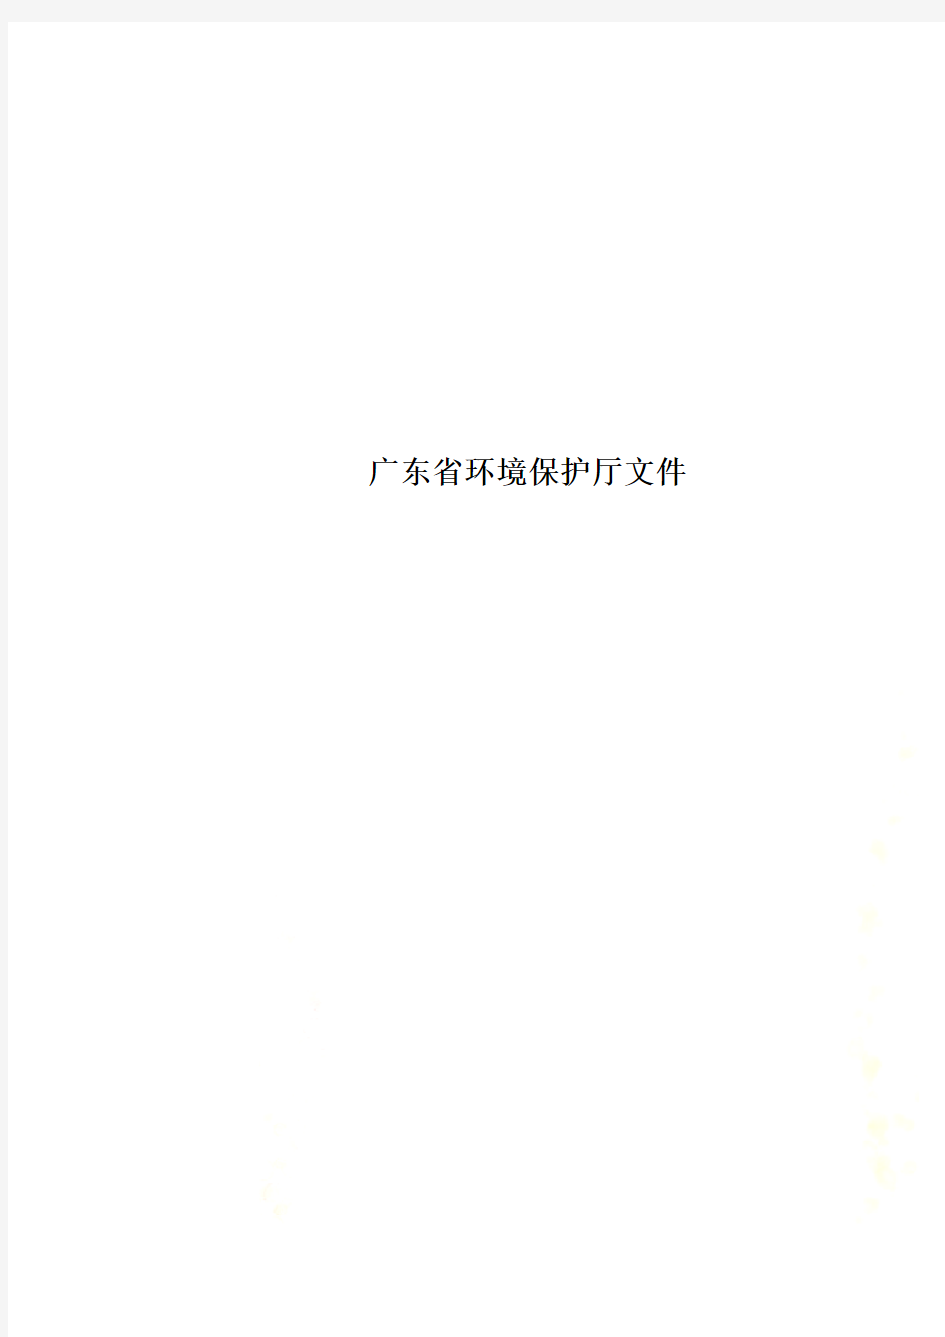 广东省环境保护厅文件